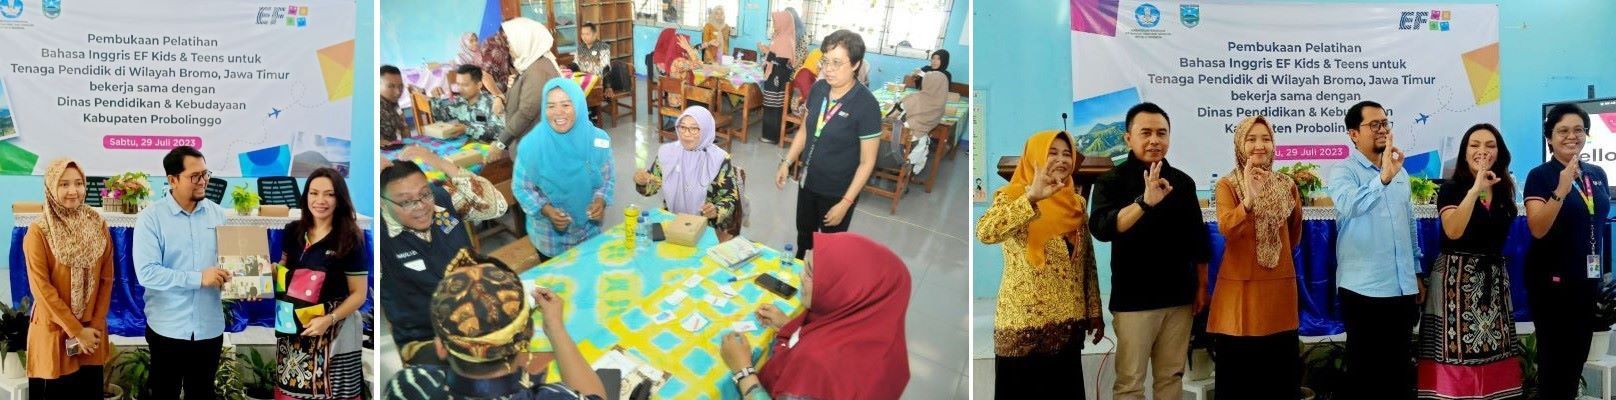 EF Kids & Teens Dukung Pariwisata Indonesia Melalui Pelatihan Guru Bahasa Inggris